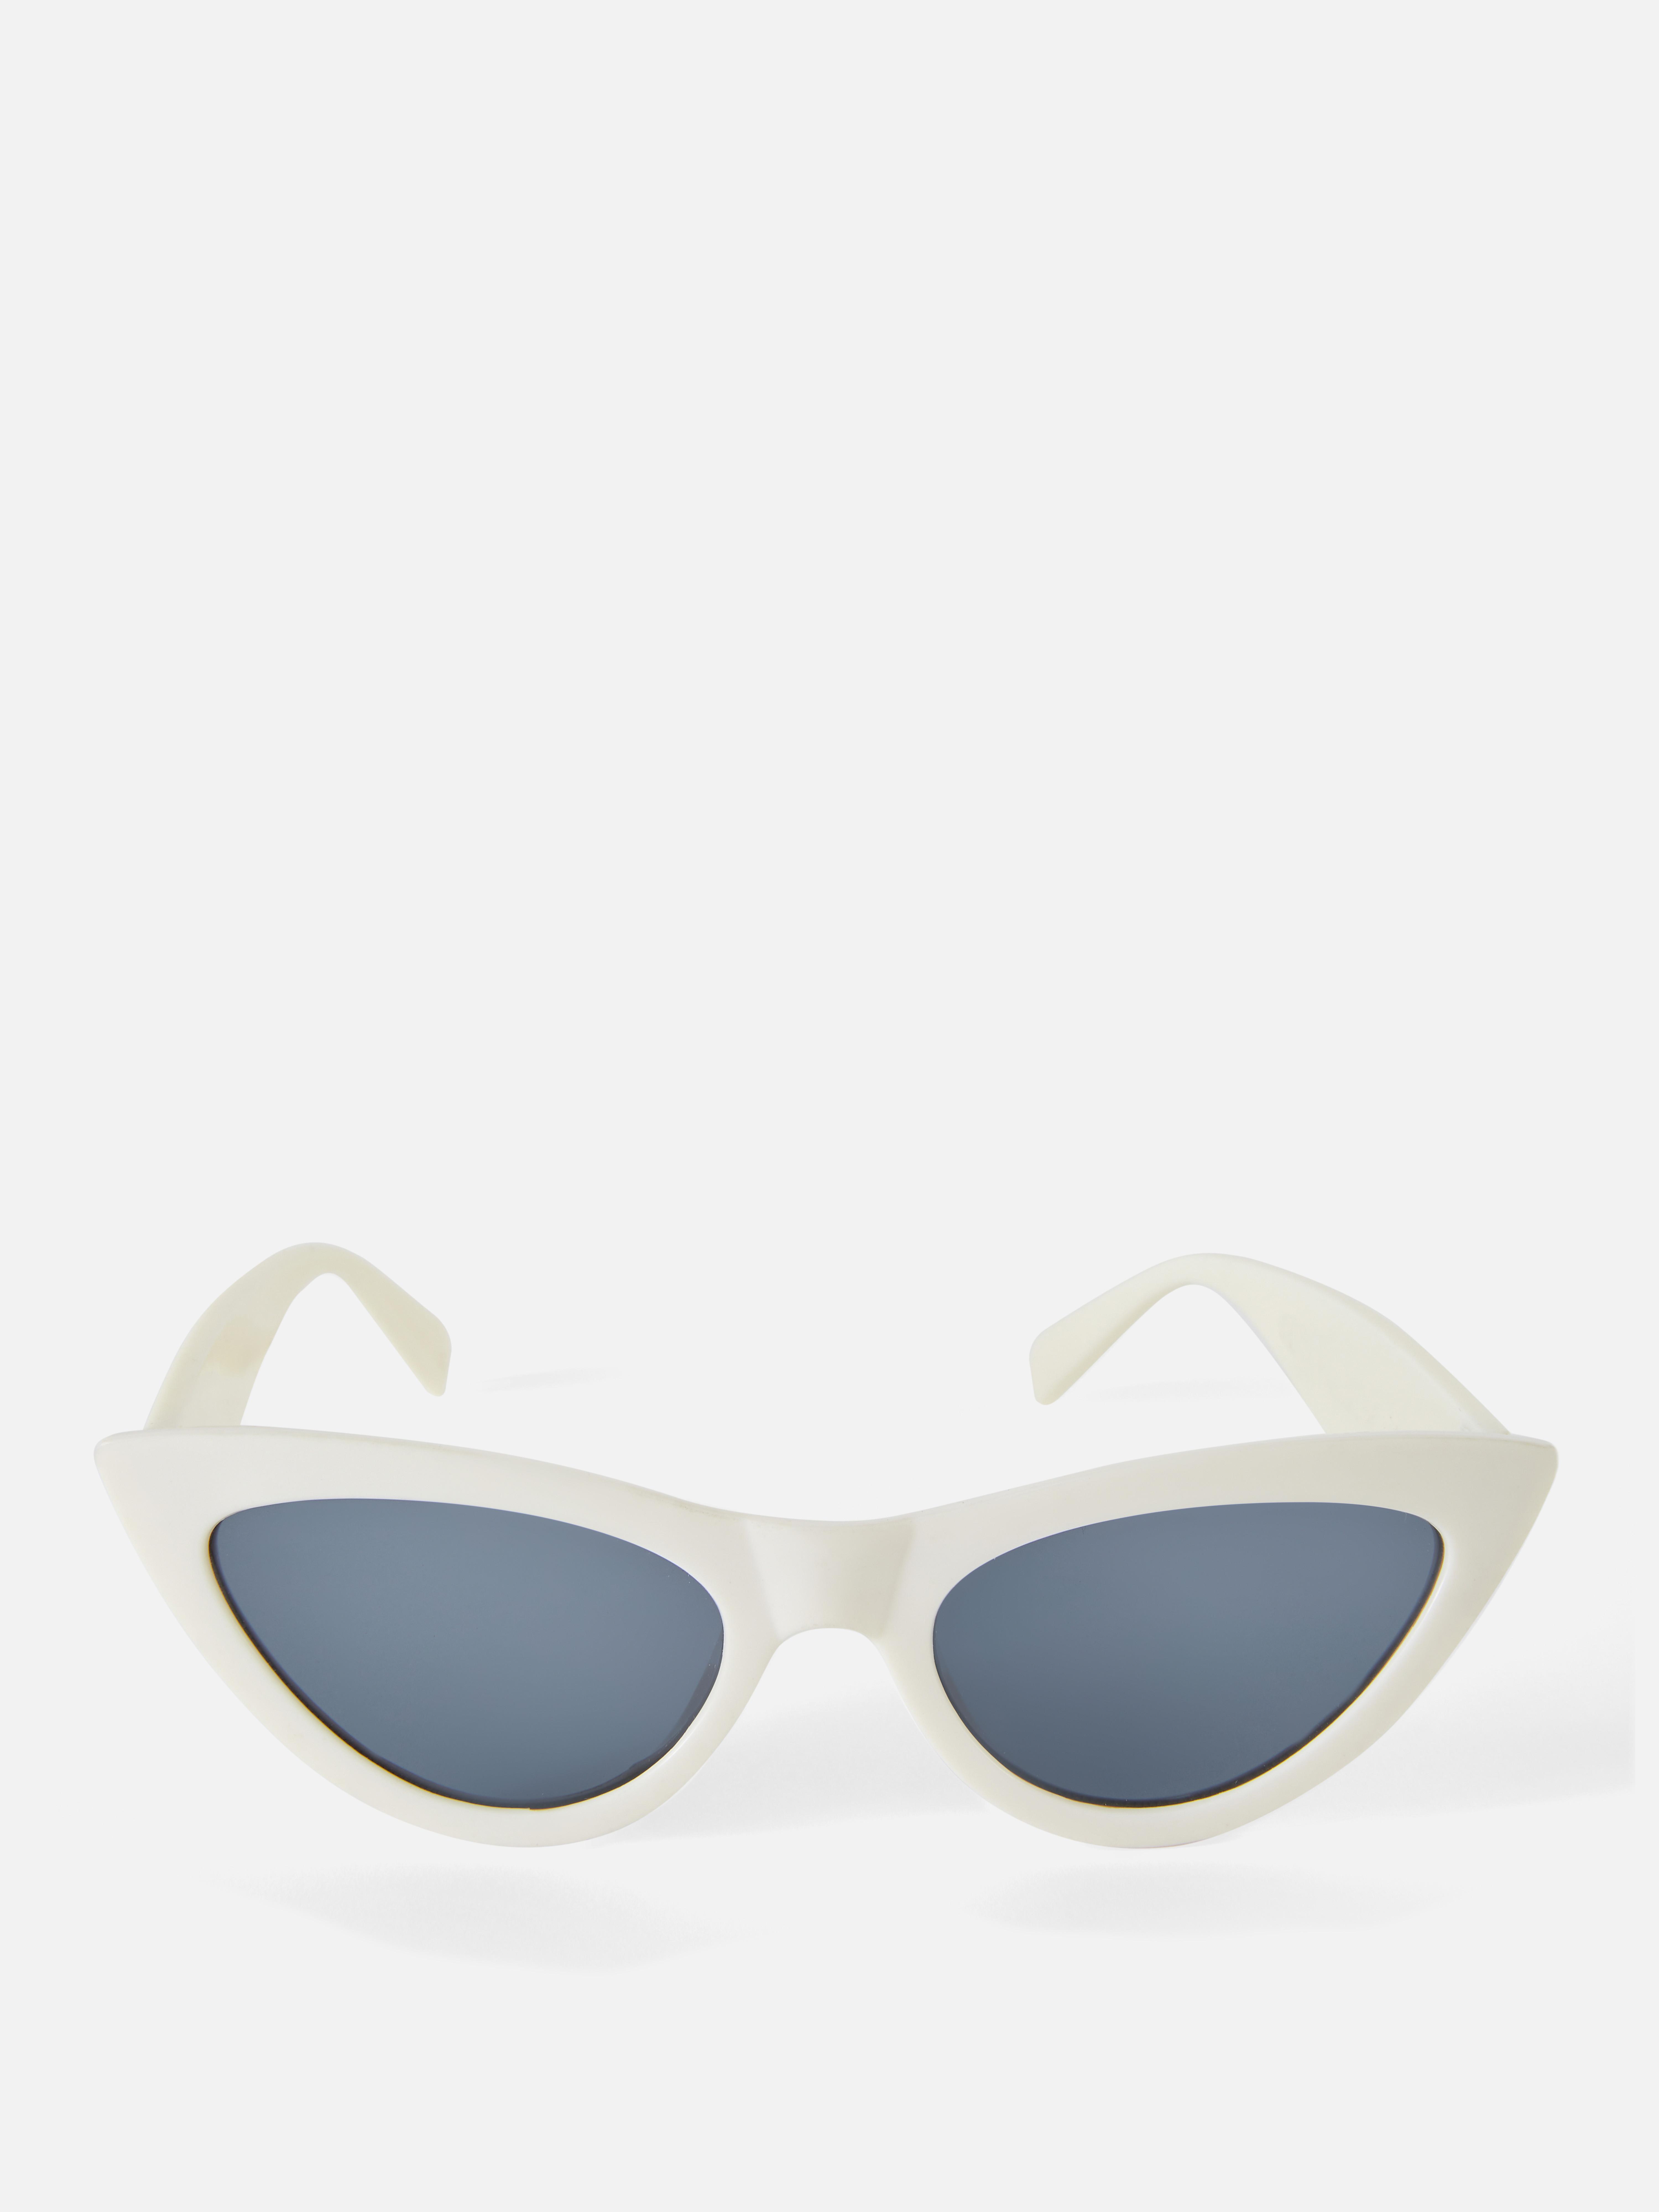 Gafas de finas estilo ojos de gato | Gafas de sol para mujer | Accesorios de mujer | Nuestra línea de moda femenina Todos los productos Primark | Primark España